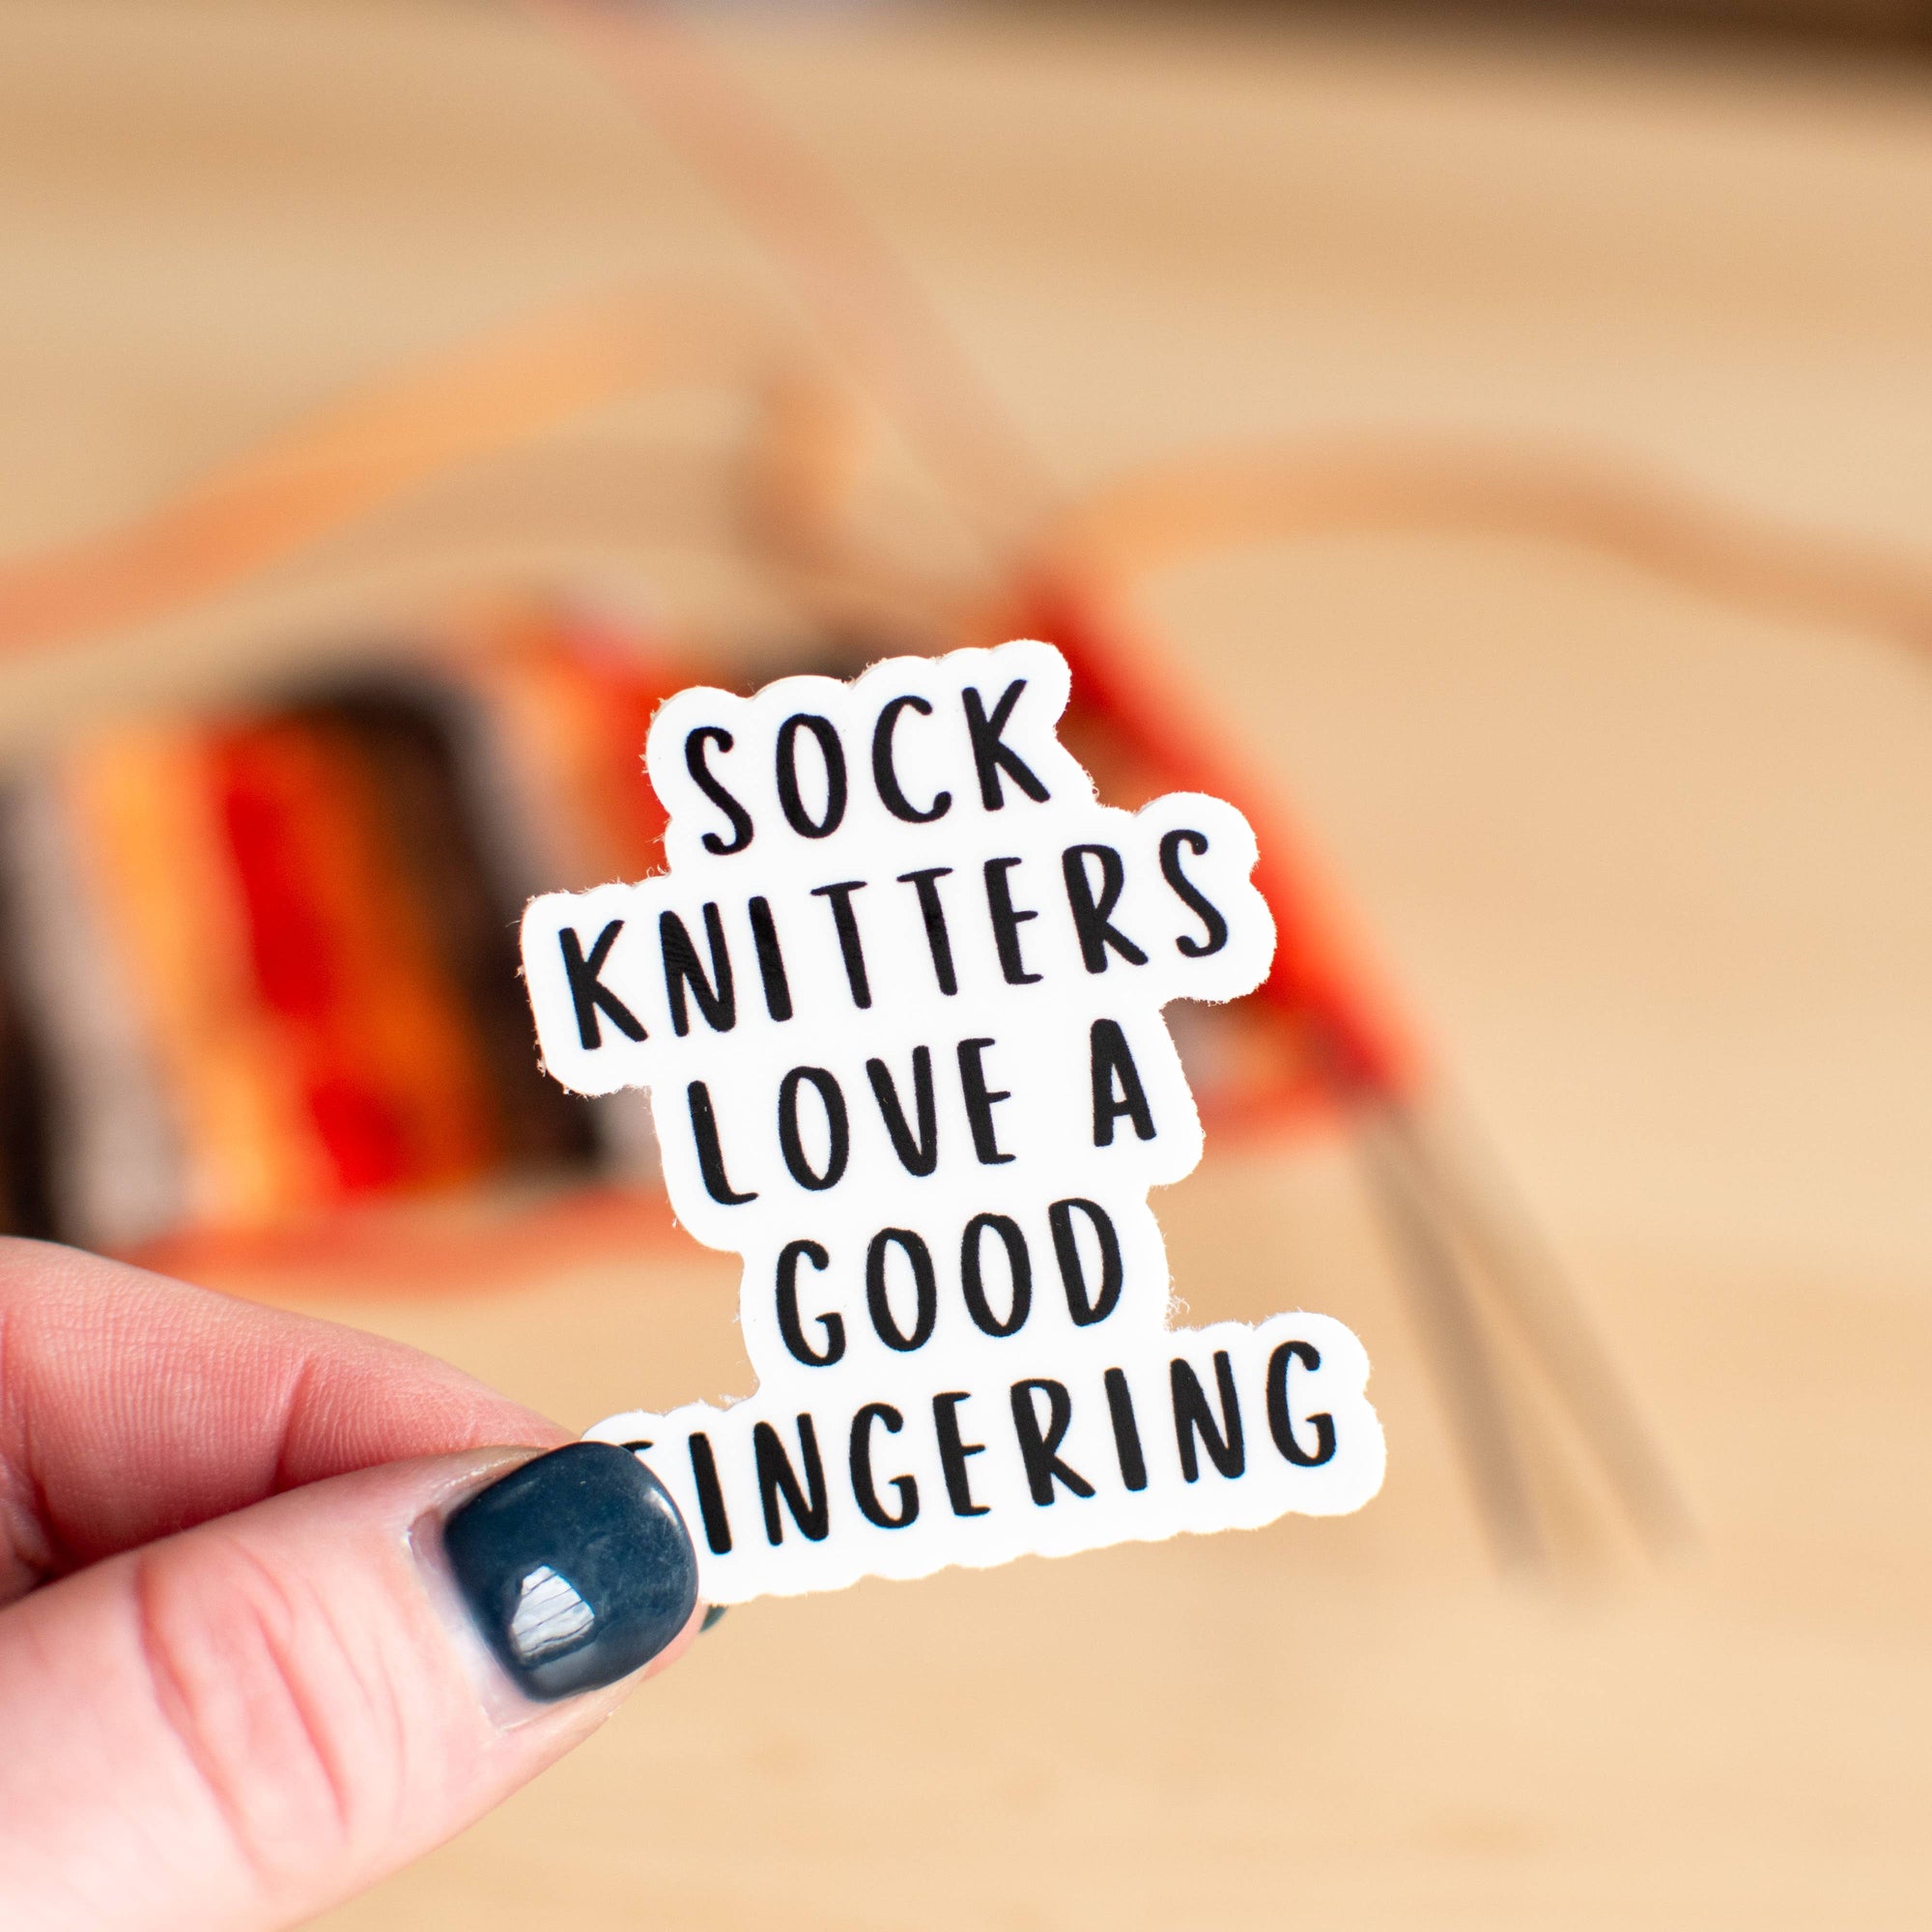 Sock knitters love a good fingering - Sticker